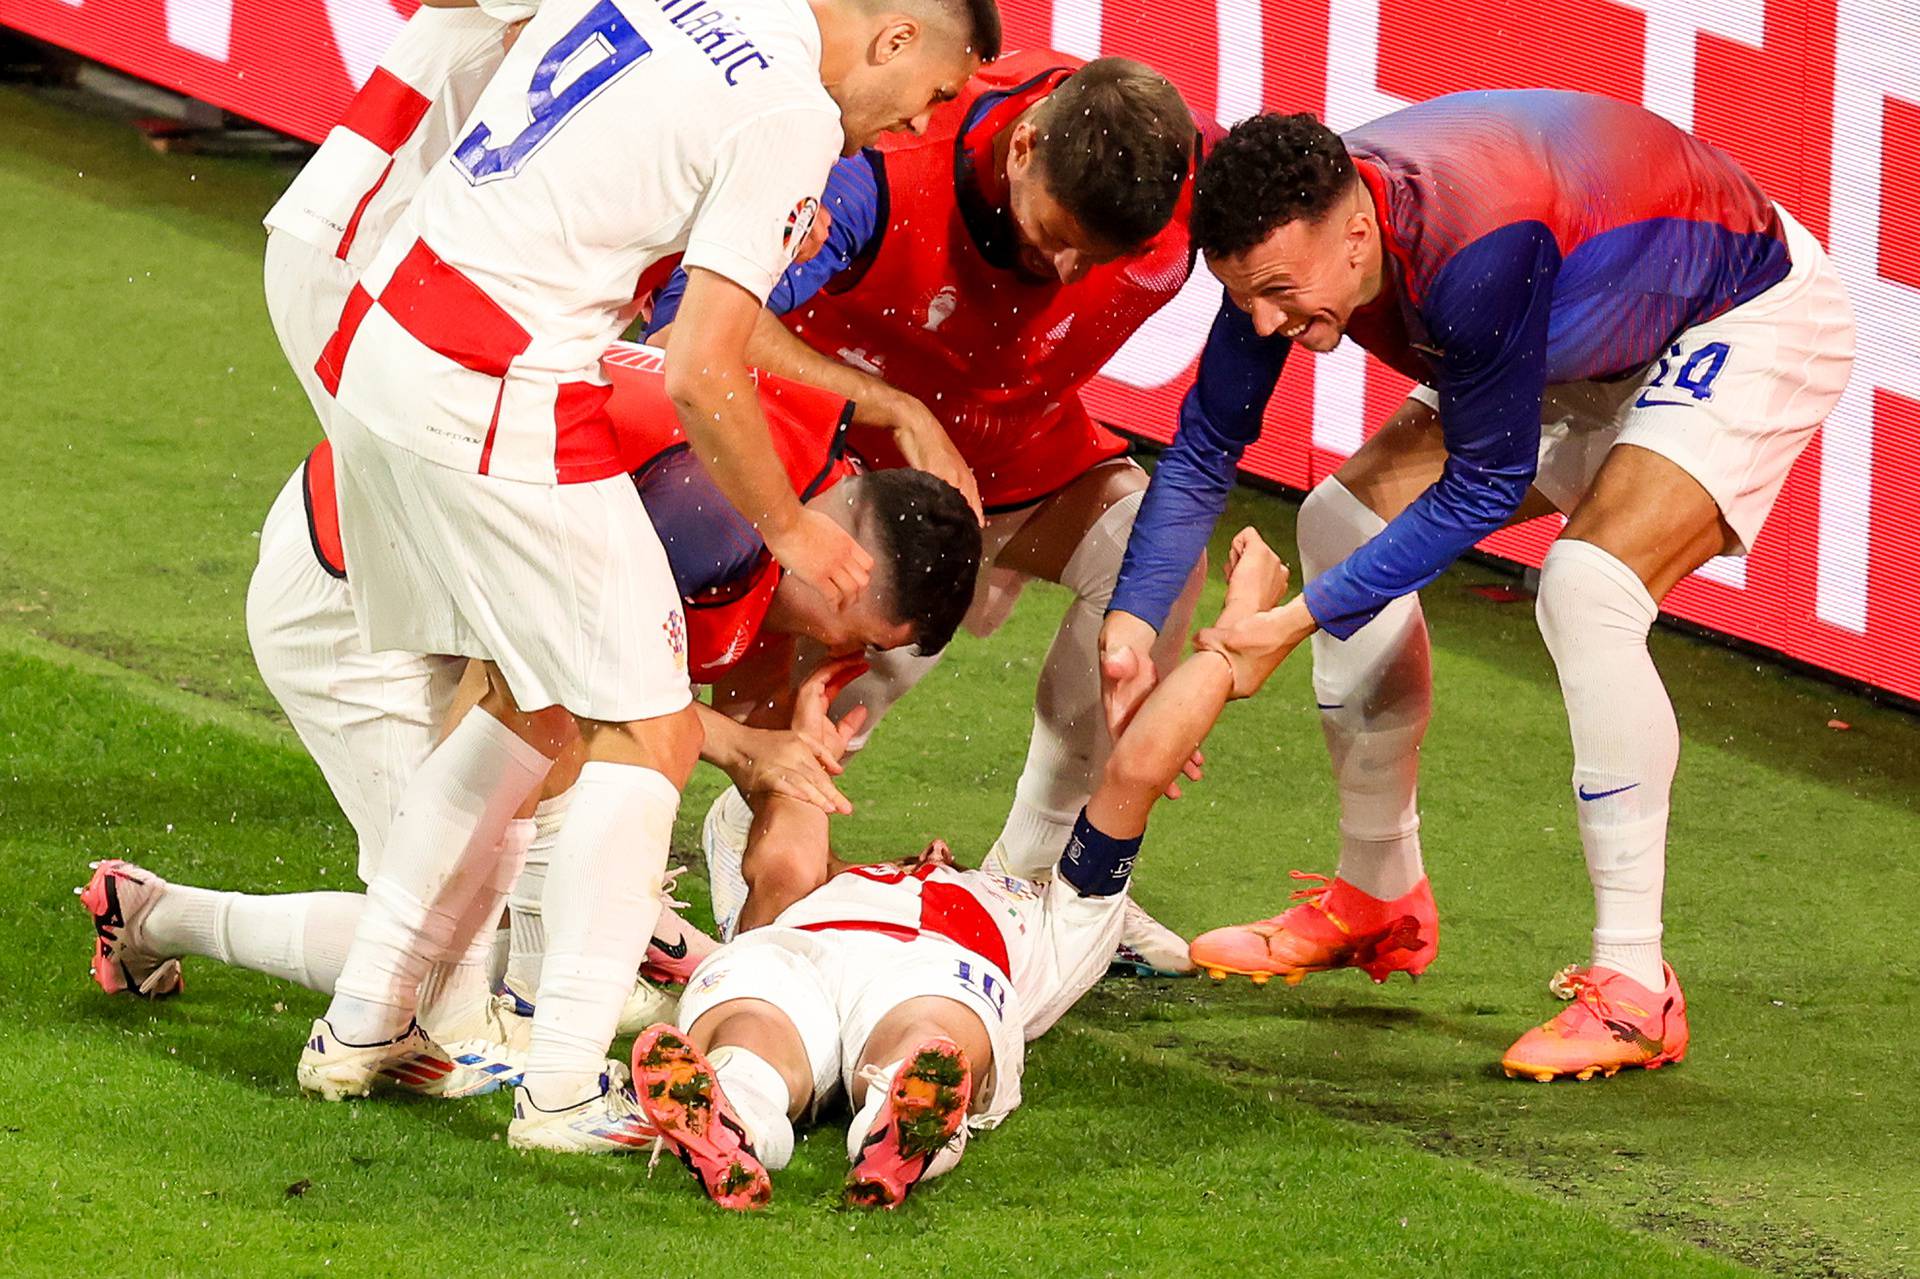 Leipzig: Hrvatska vodi 1:0  na  susretu Hrvatske i Italije u 3. kolu skupine B na Europskom prvenstvu